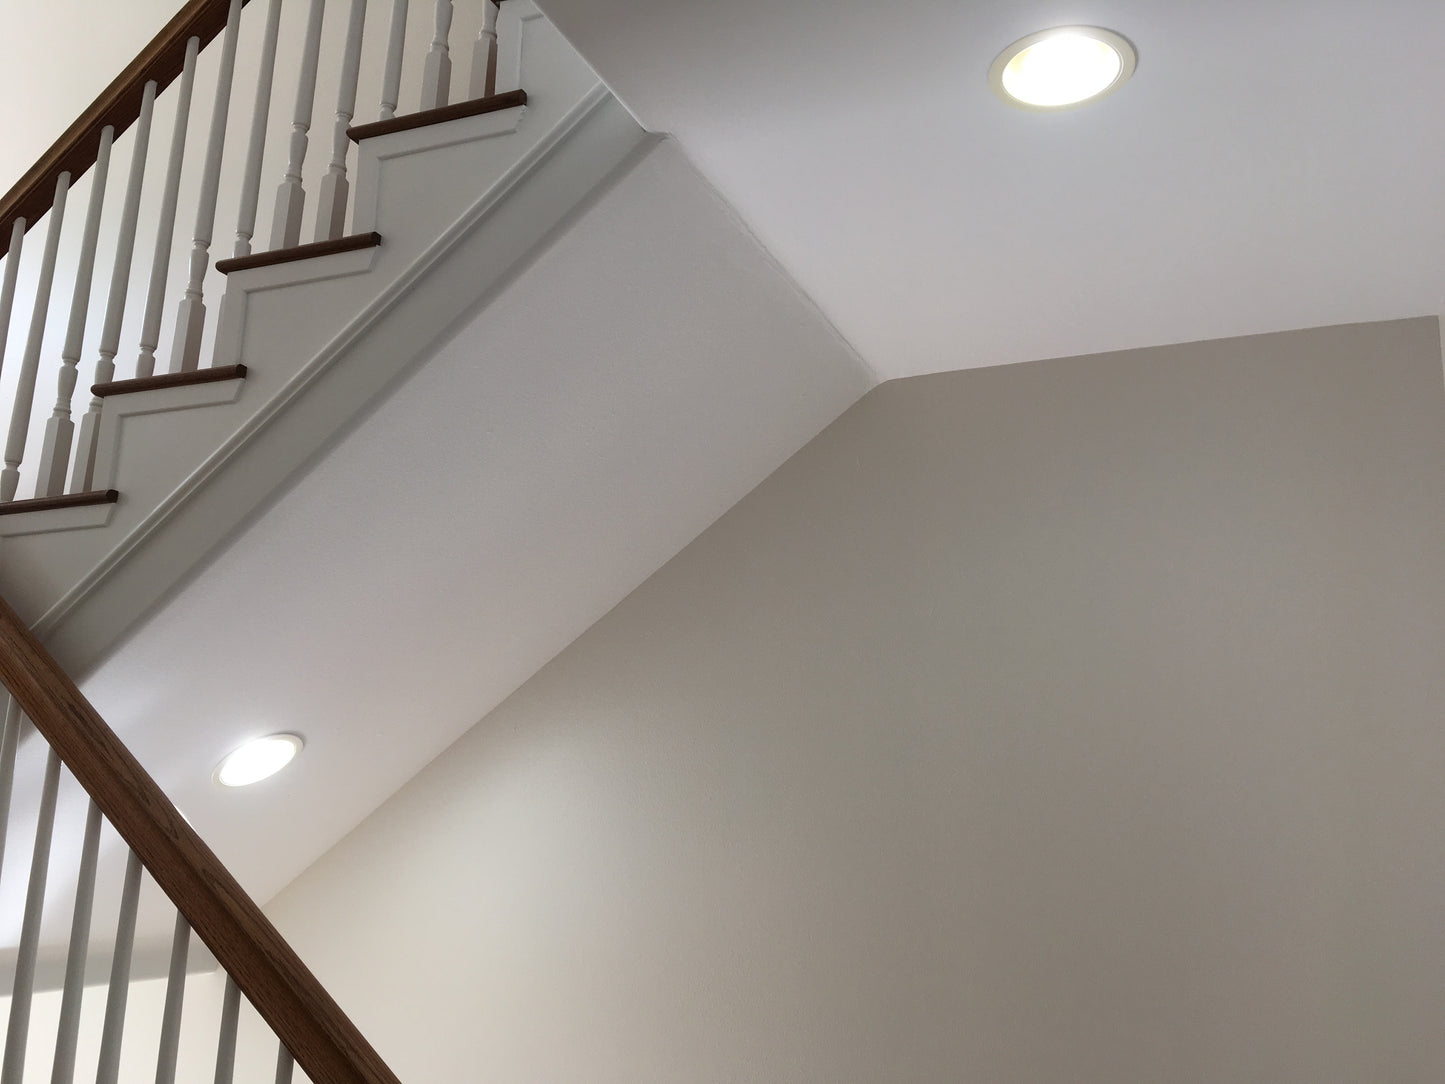 Ultra High 95 CRI E26 BR30 LED Bulb for Home & Residential